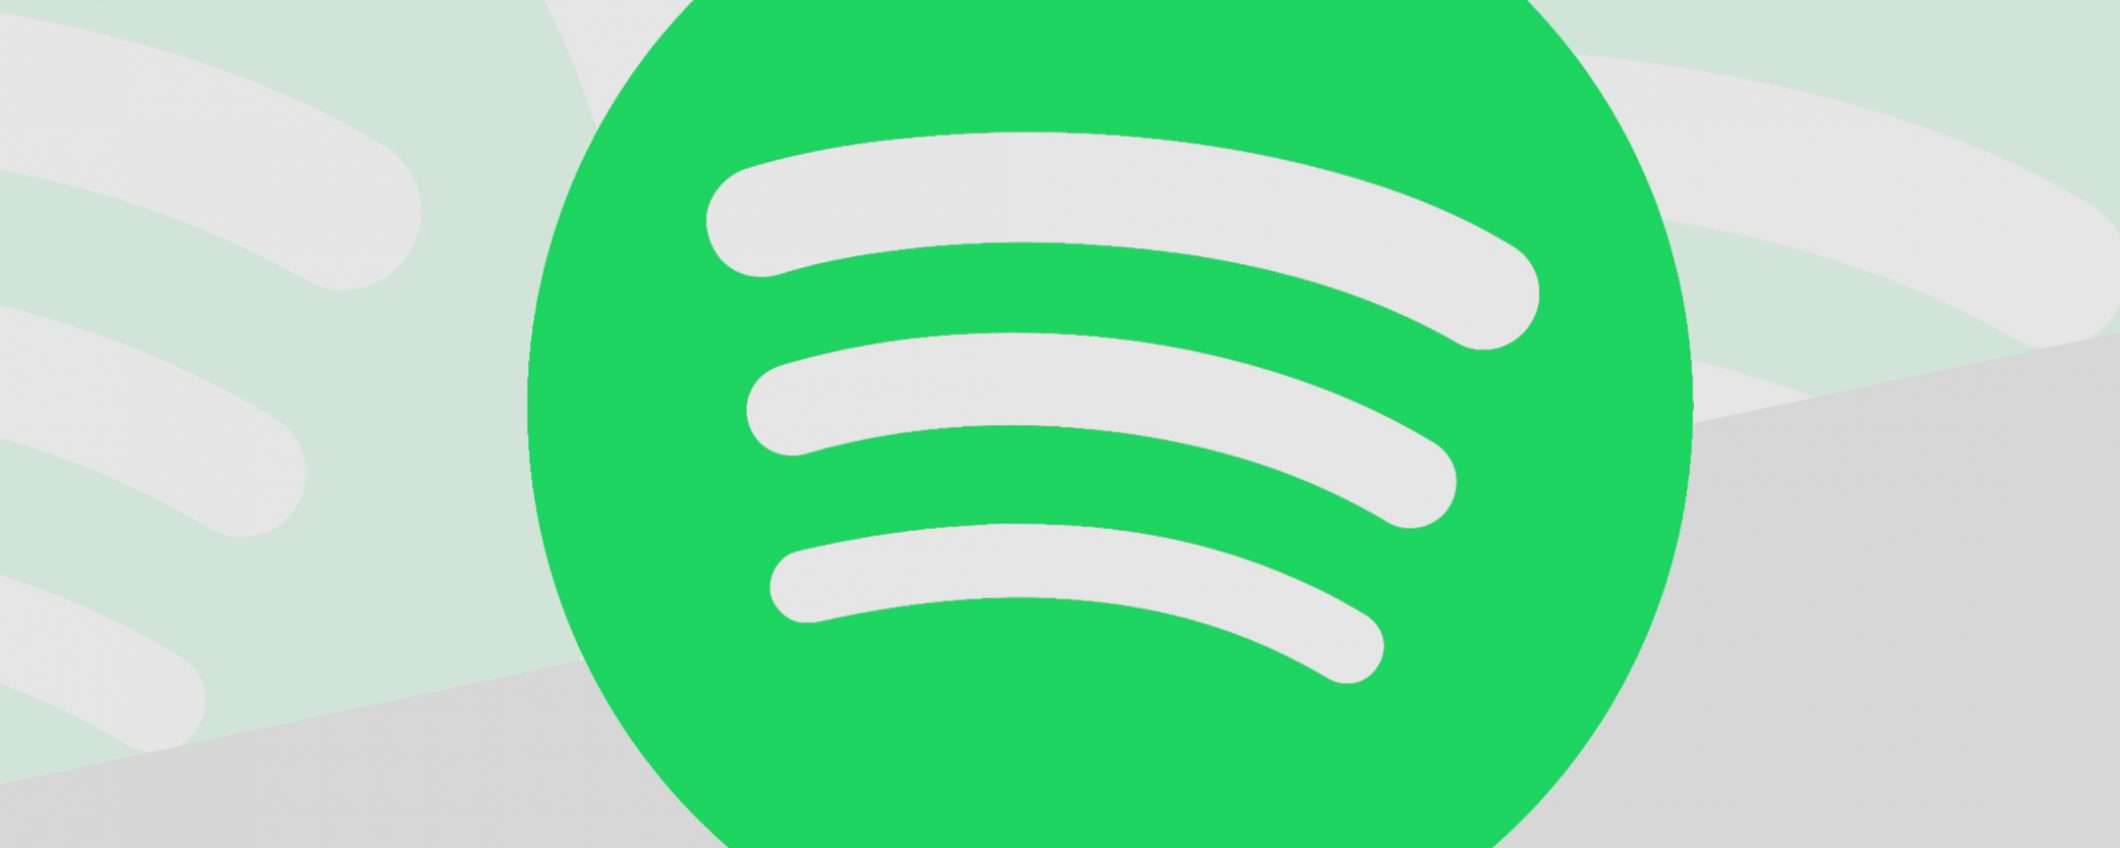 Your Daily Podcasts al debutto oggi su Spotify